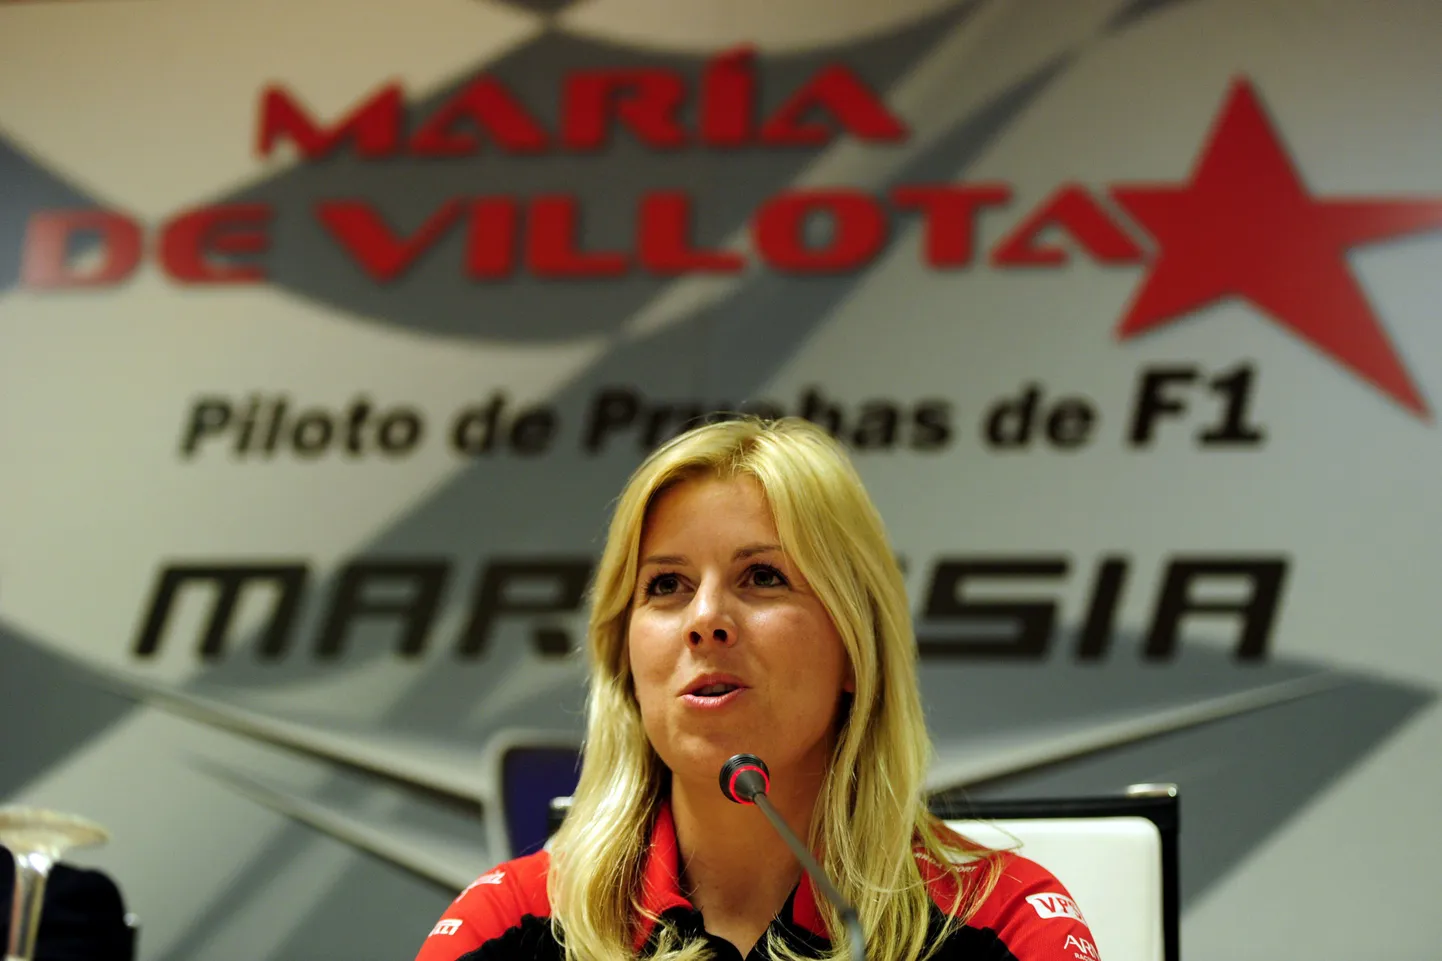 Maria De Villota